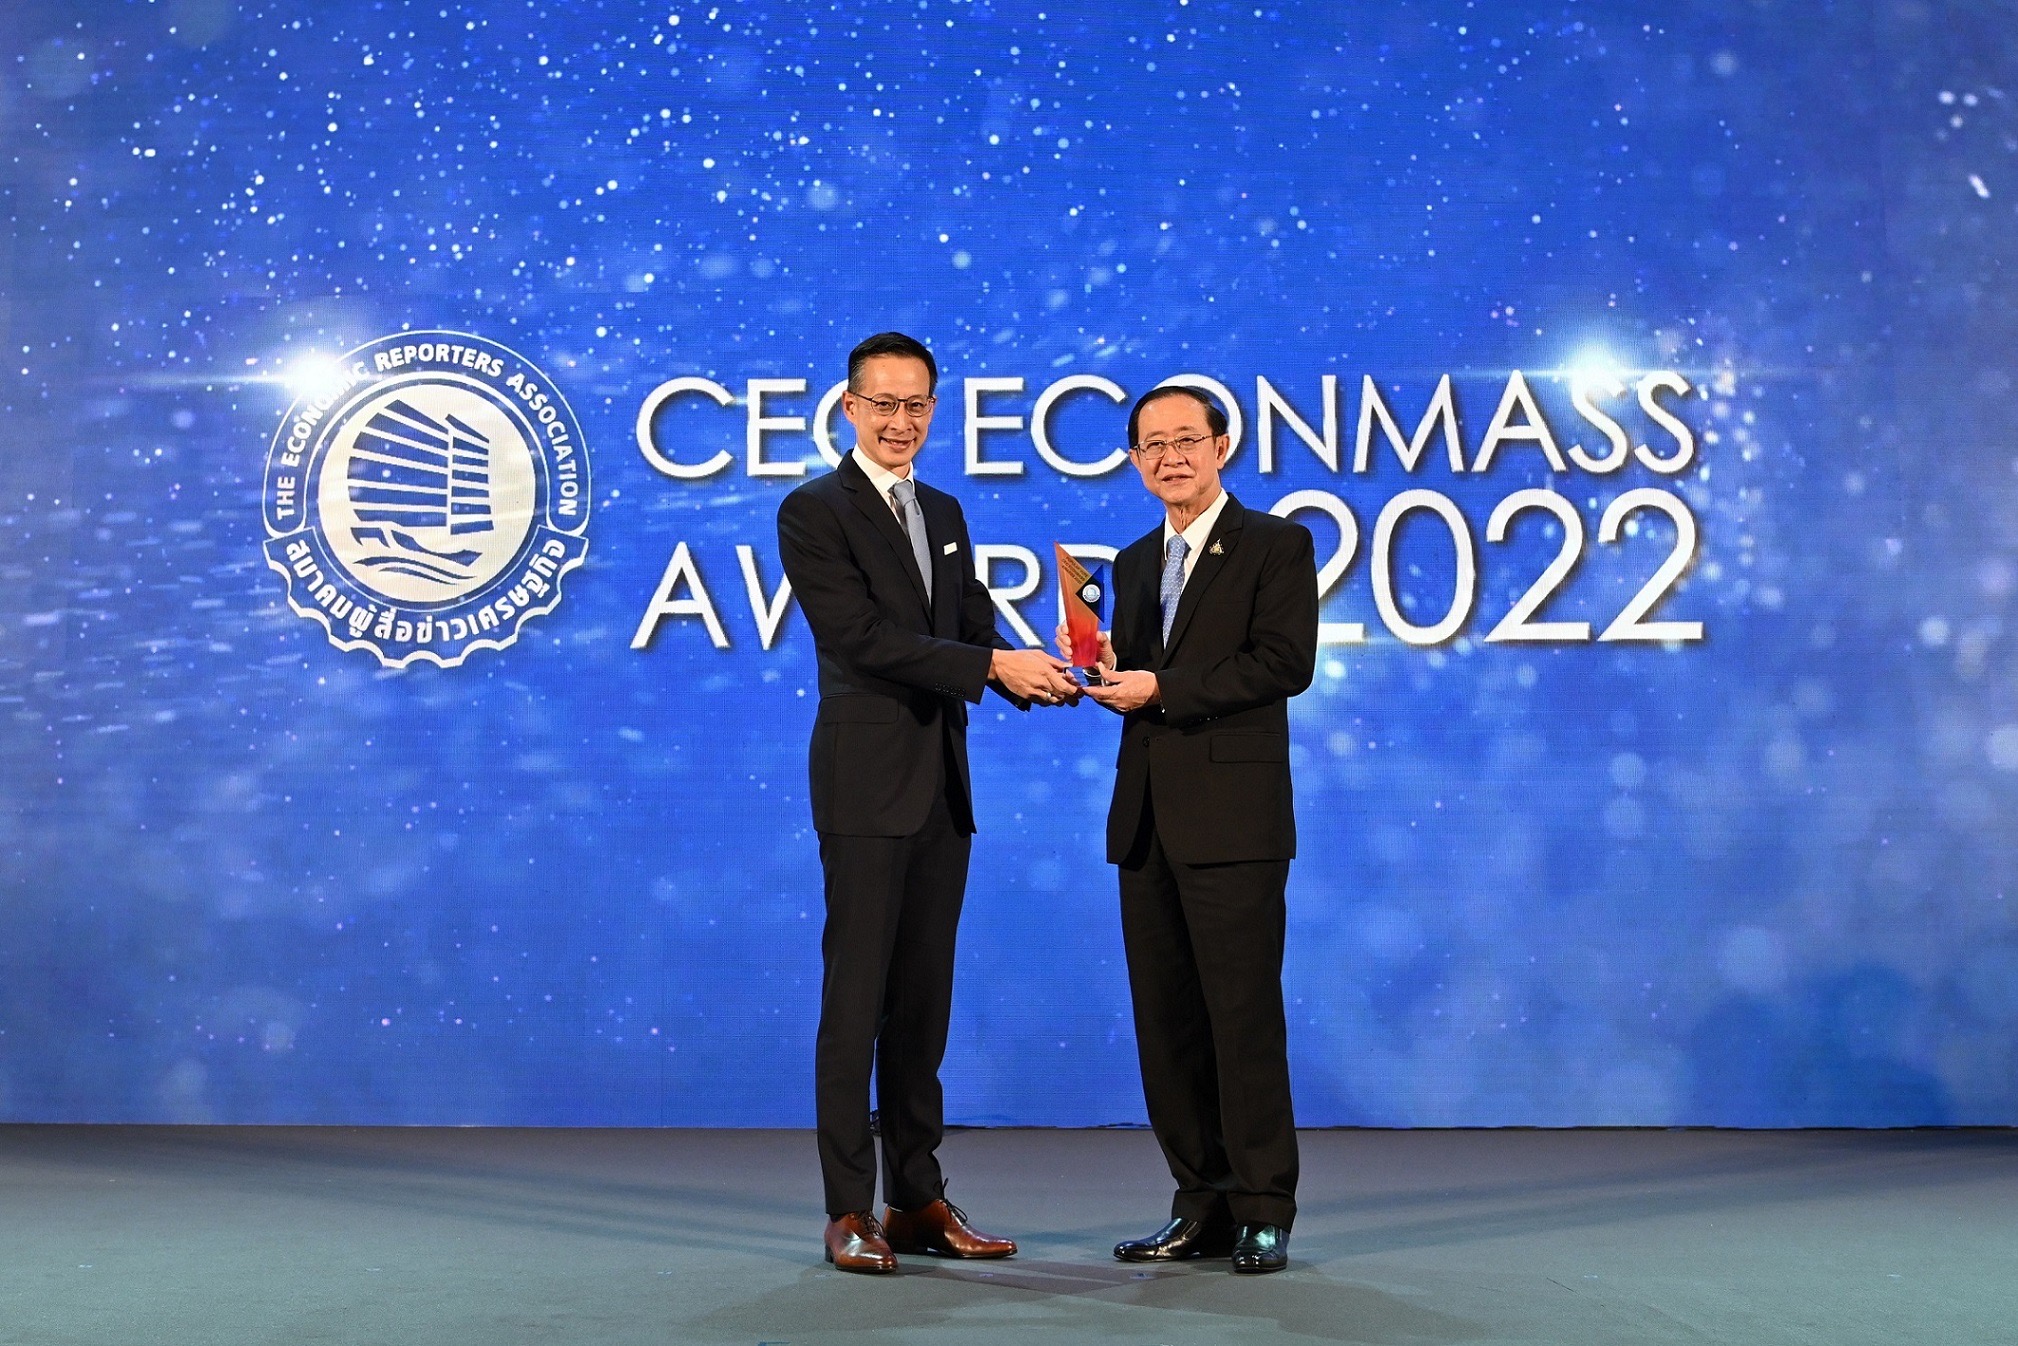 “สาระ ล่ำซำ” คว้ารางวัลเกียรติยศสุดยอดซีอีโอประเภทขวัญใจสื่อมวลชนประจำปี 2565 จากงานประกาศรางวัล CEO Econmass Awards2022